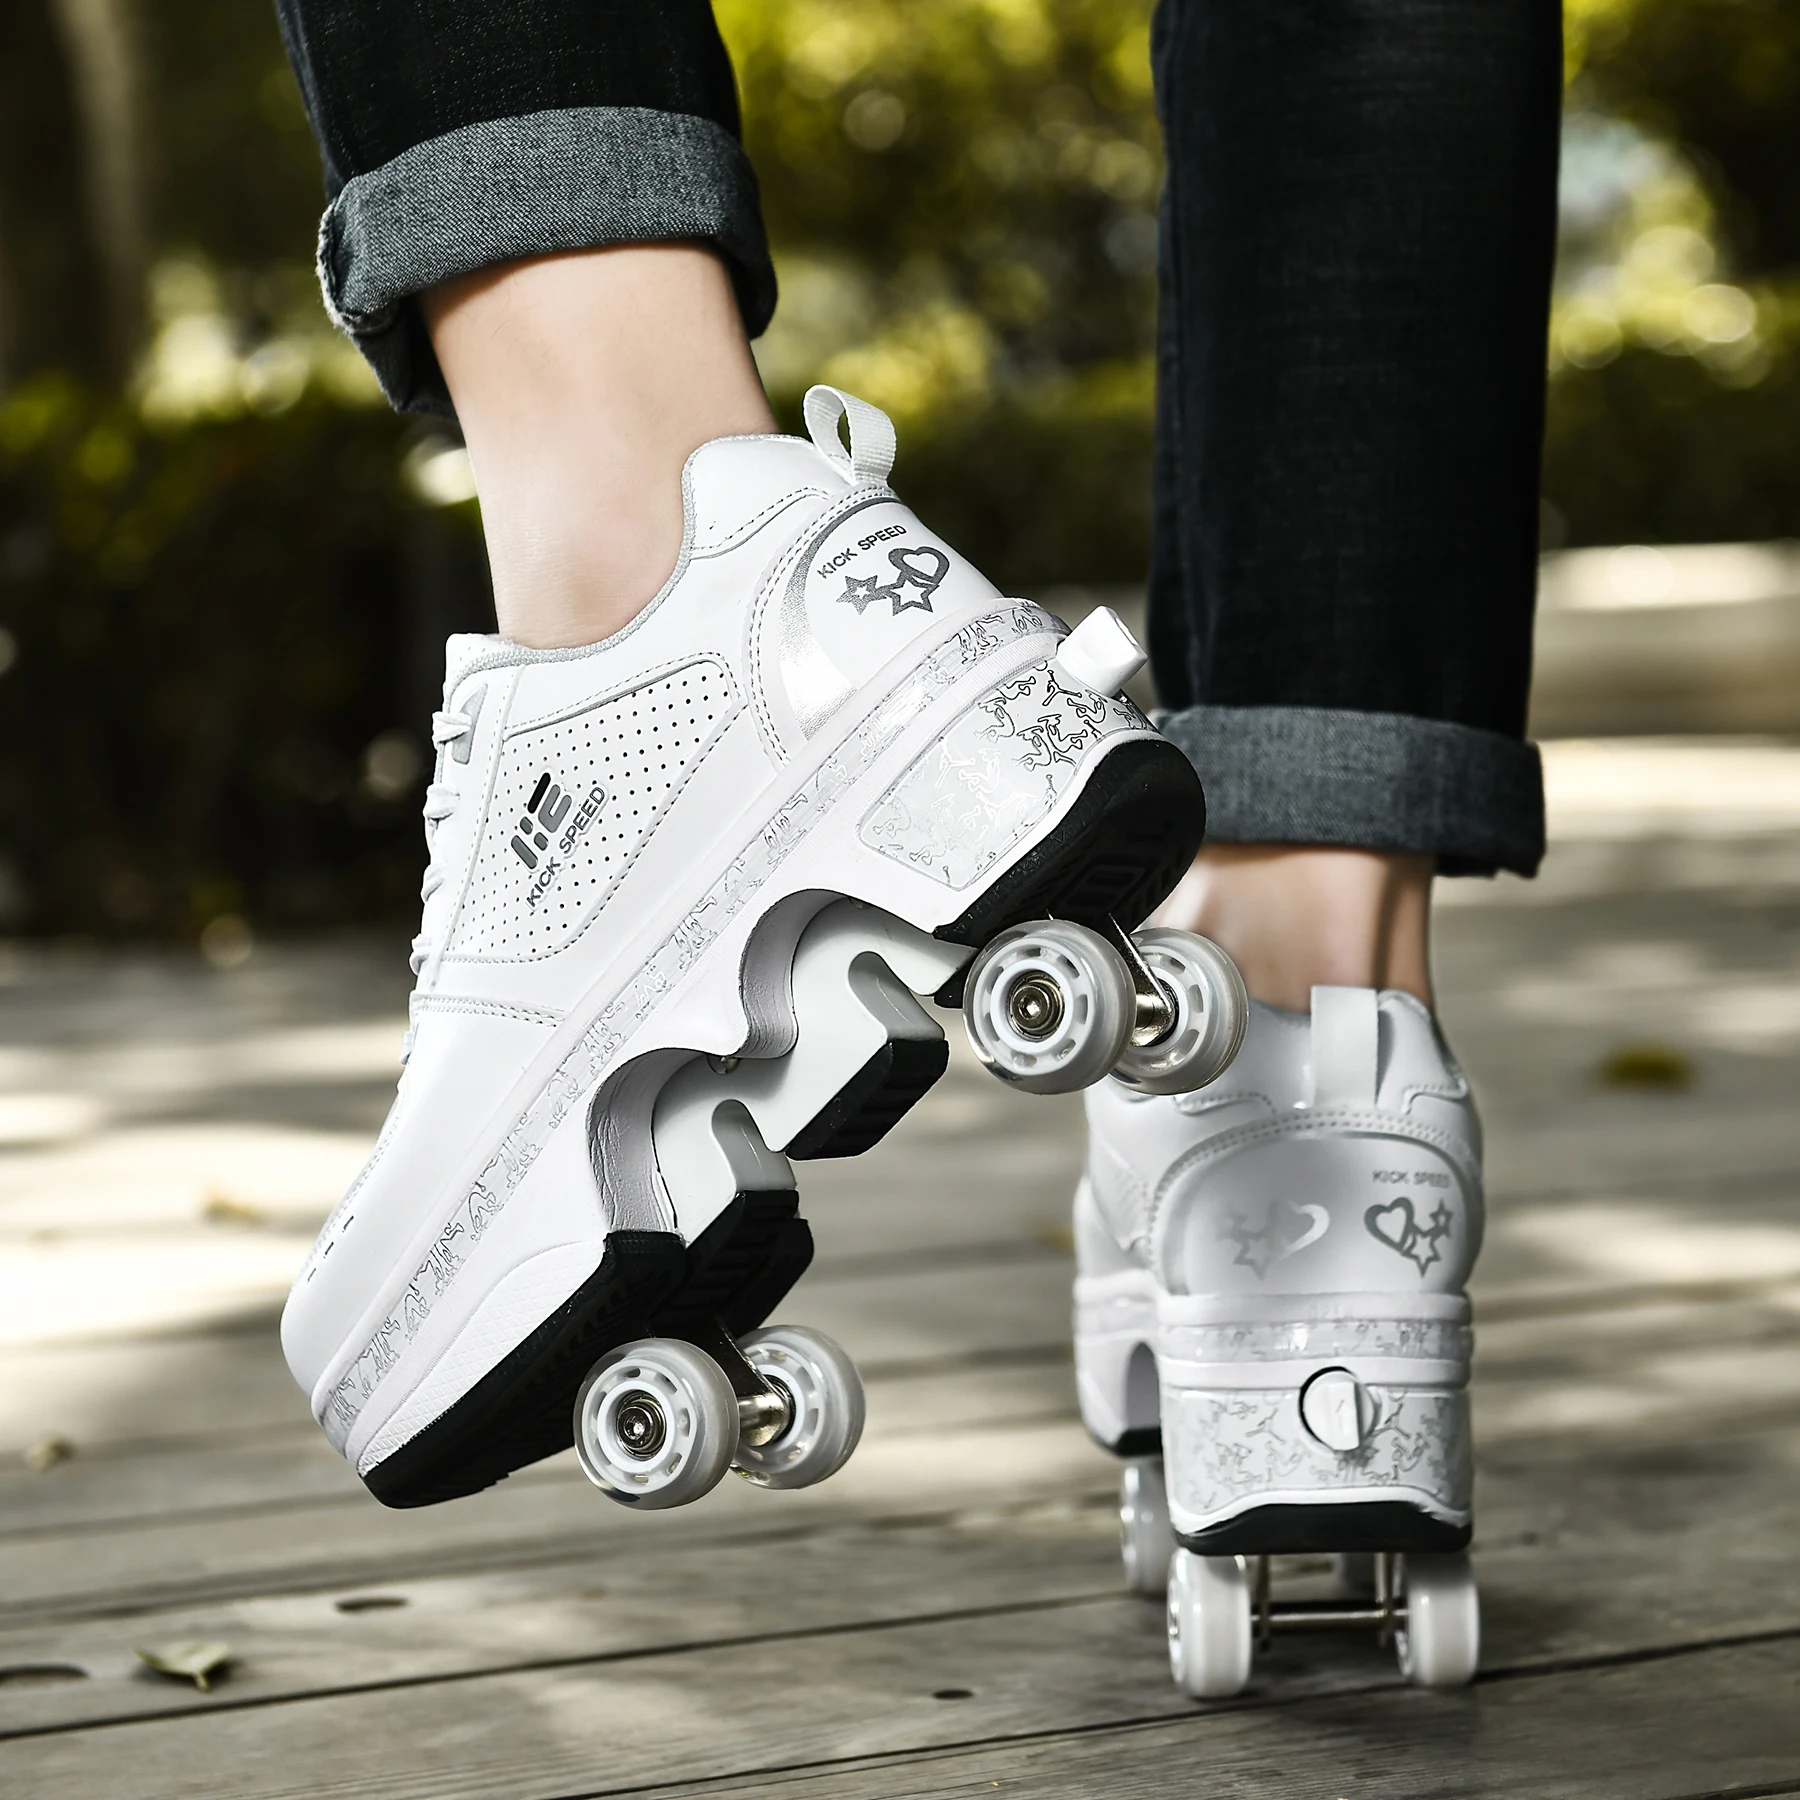 Zapatos con Cuatro Ruedas Automática Calzado de Skateboarding Deportes de Exterior Patines en Línea Aire Libre y Deporte Vibración Parpadeo Gimnasia Running Zapatillas,35 